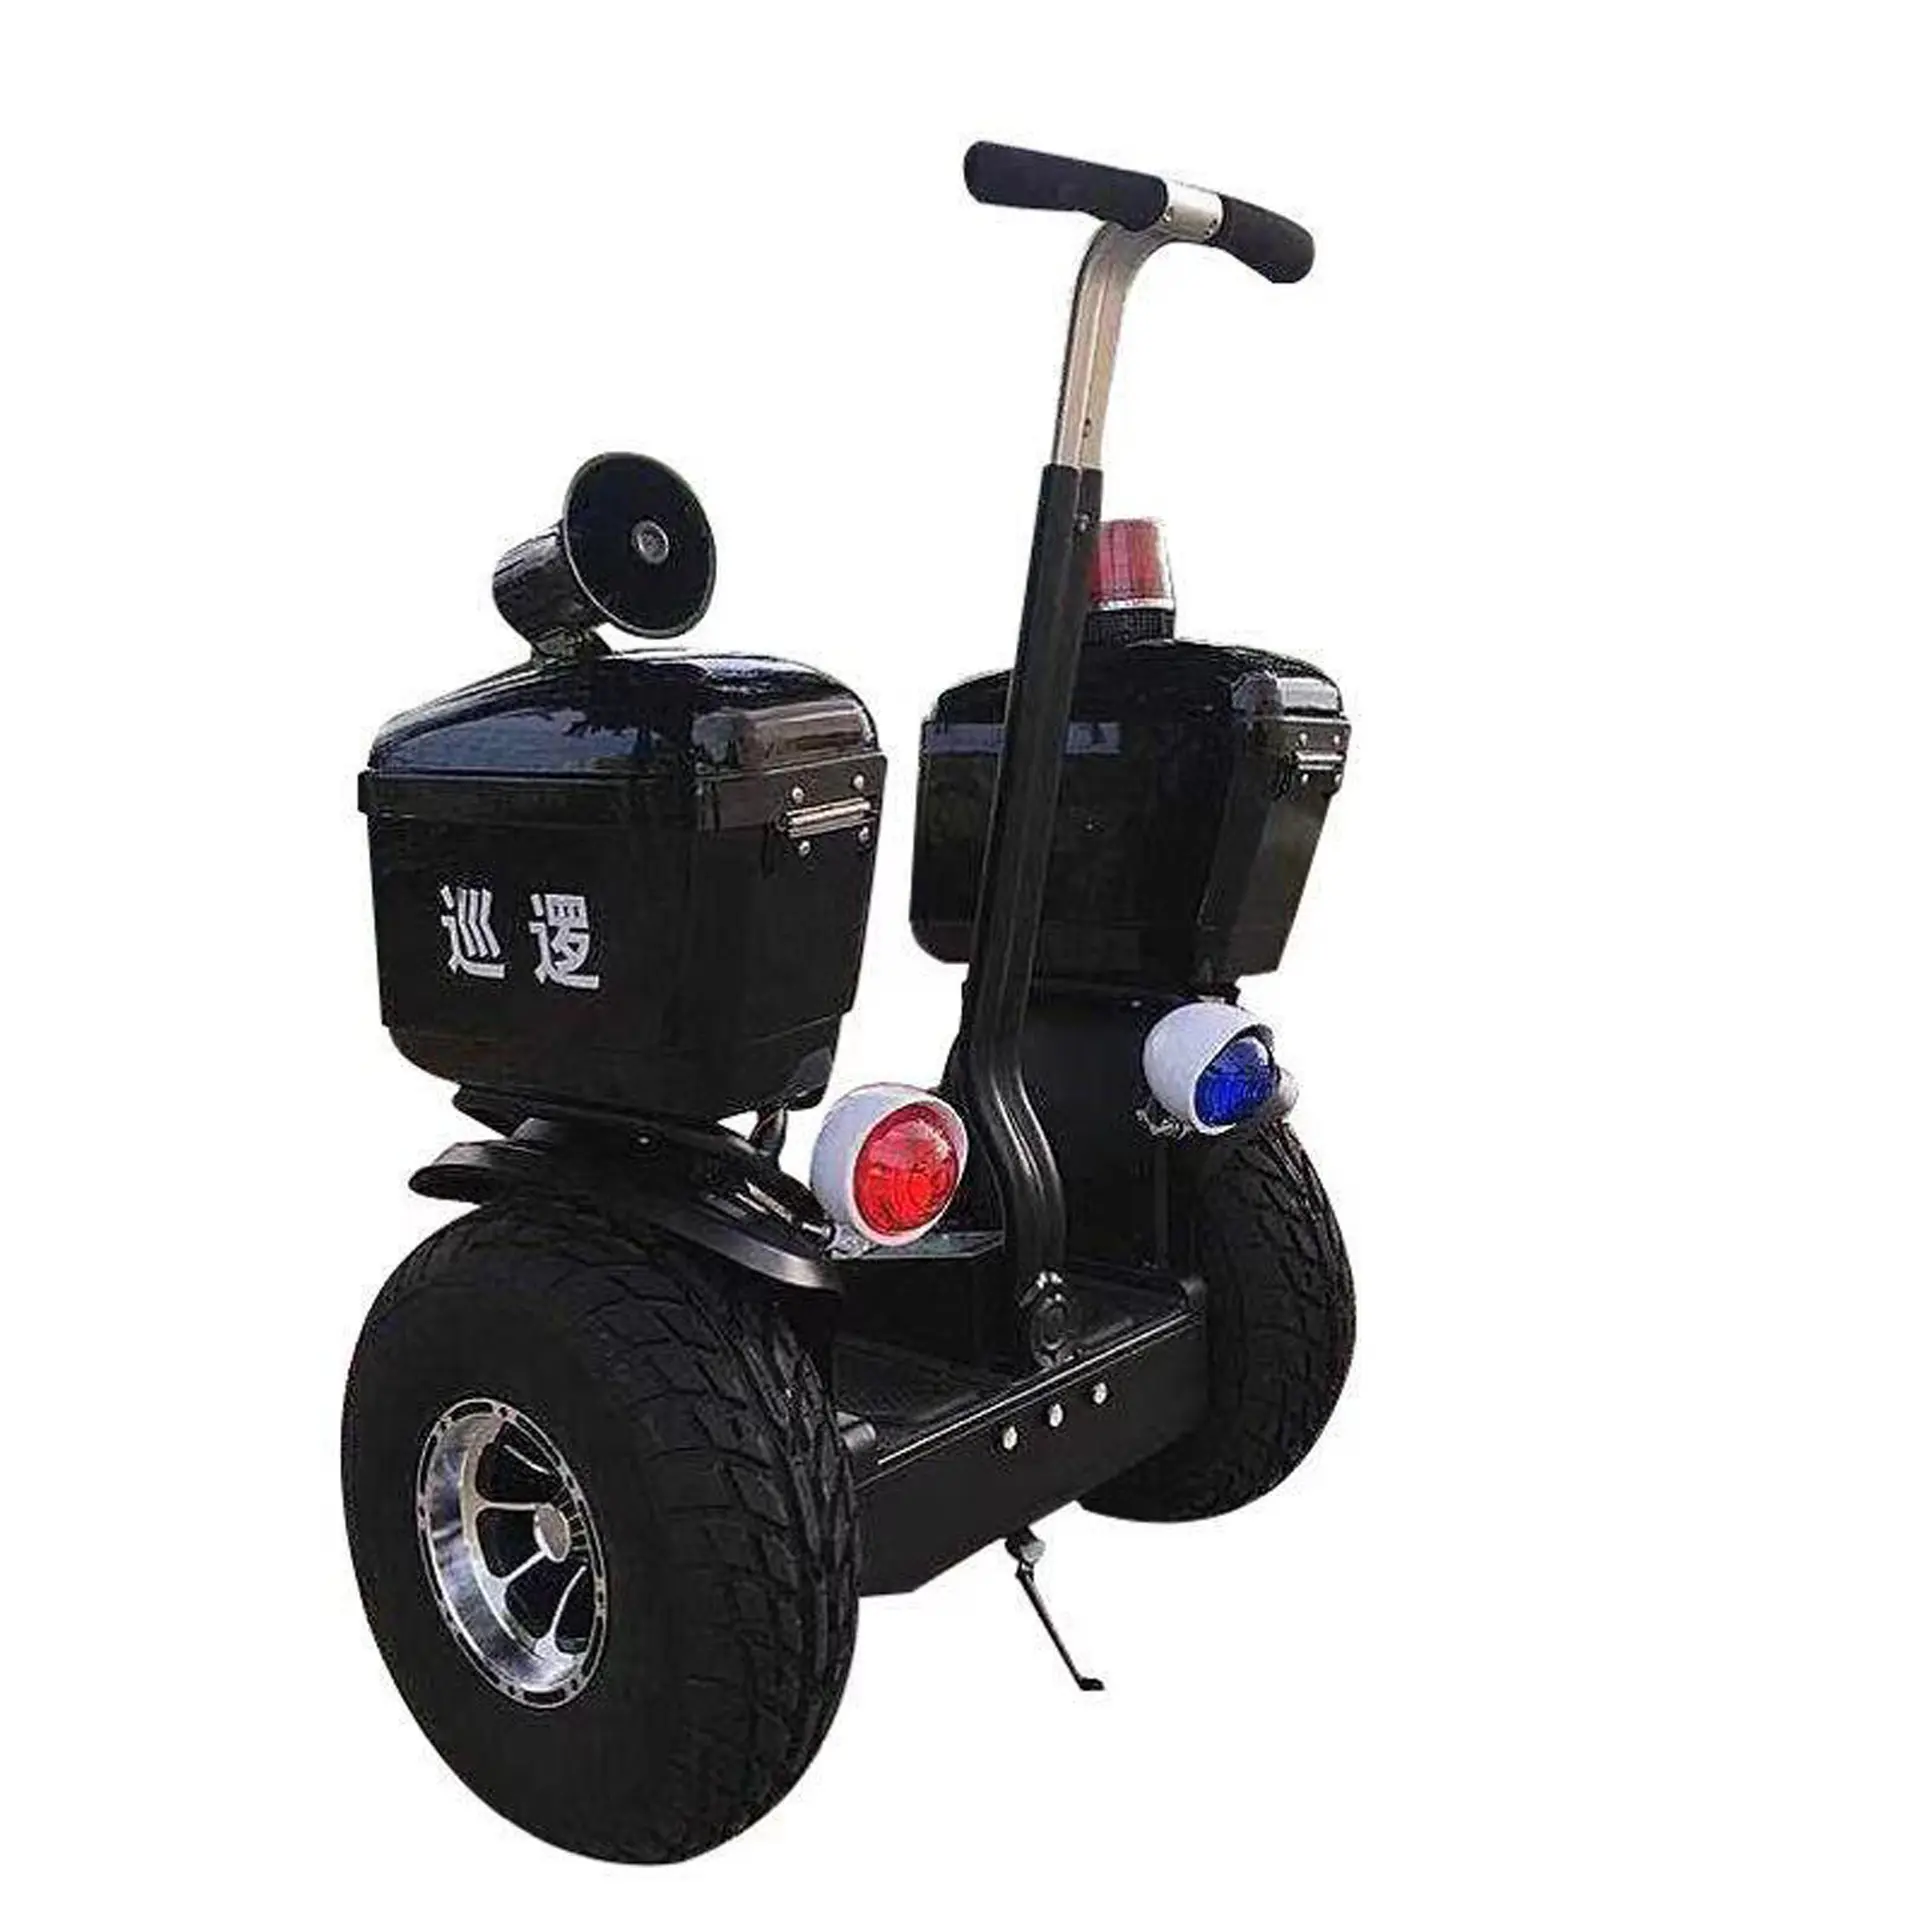 Scooter de patrulla de guardia de seguridad eléctrica de buena calidad Scooter de autoequilibrio eléctrico de largo alcance para adultos con mango